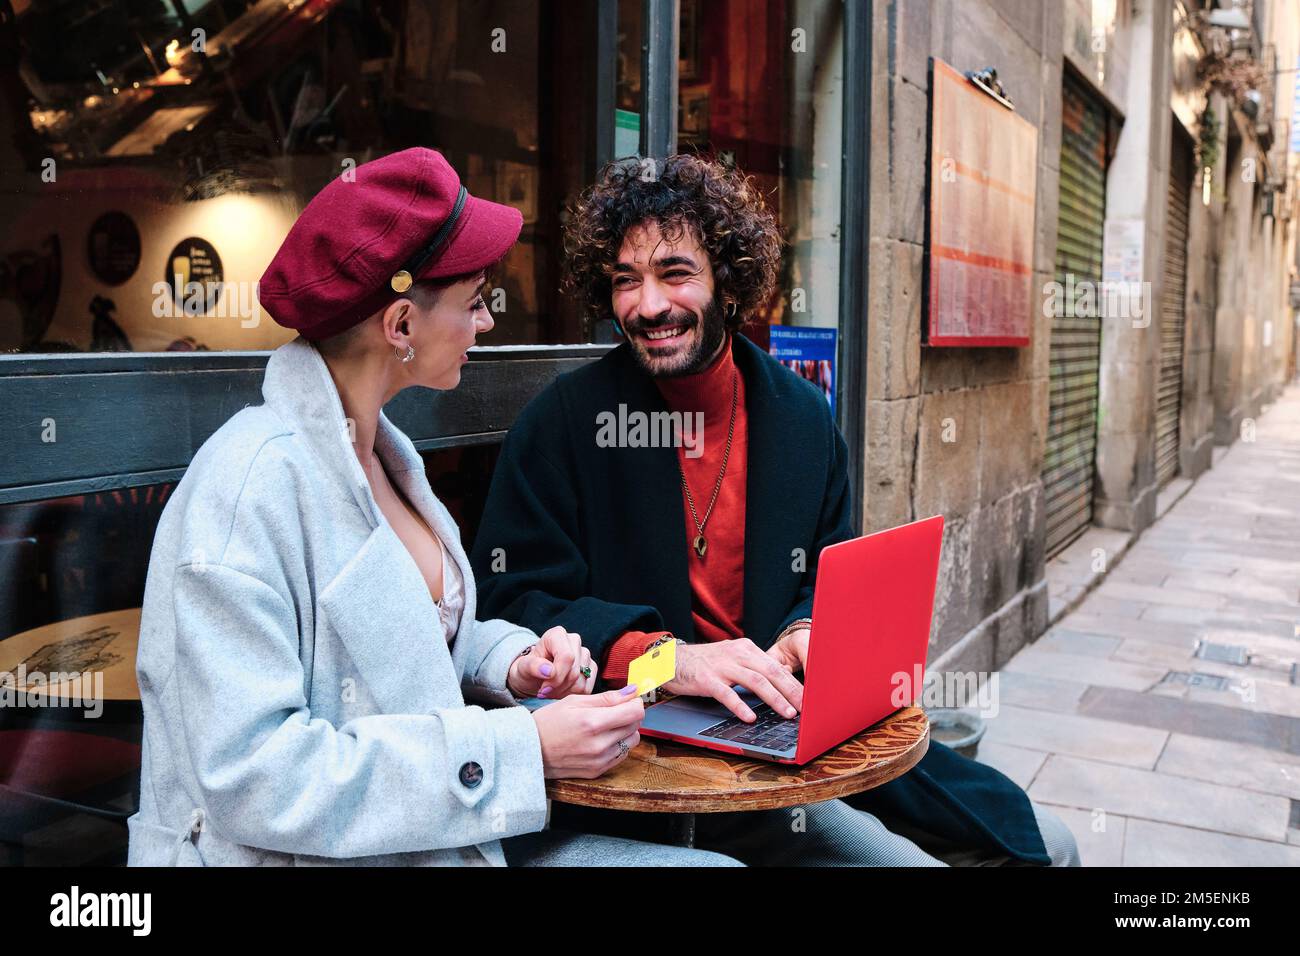 Ein Paar, das online einkauft, sitzt auf der Außenterrasse der Cafeteria Stockfoto